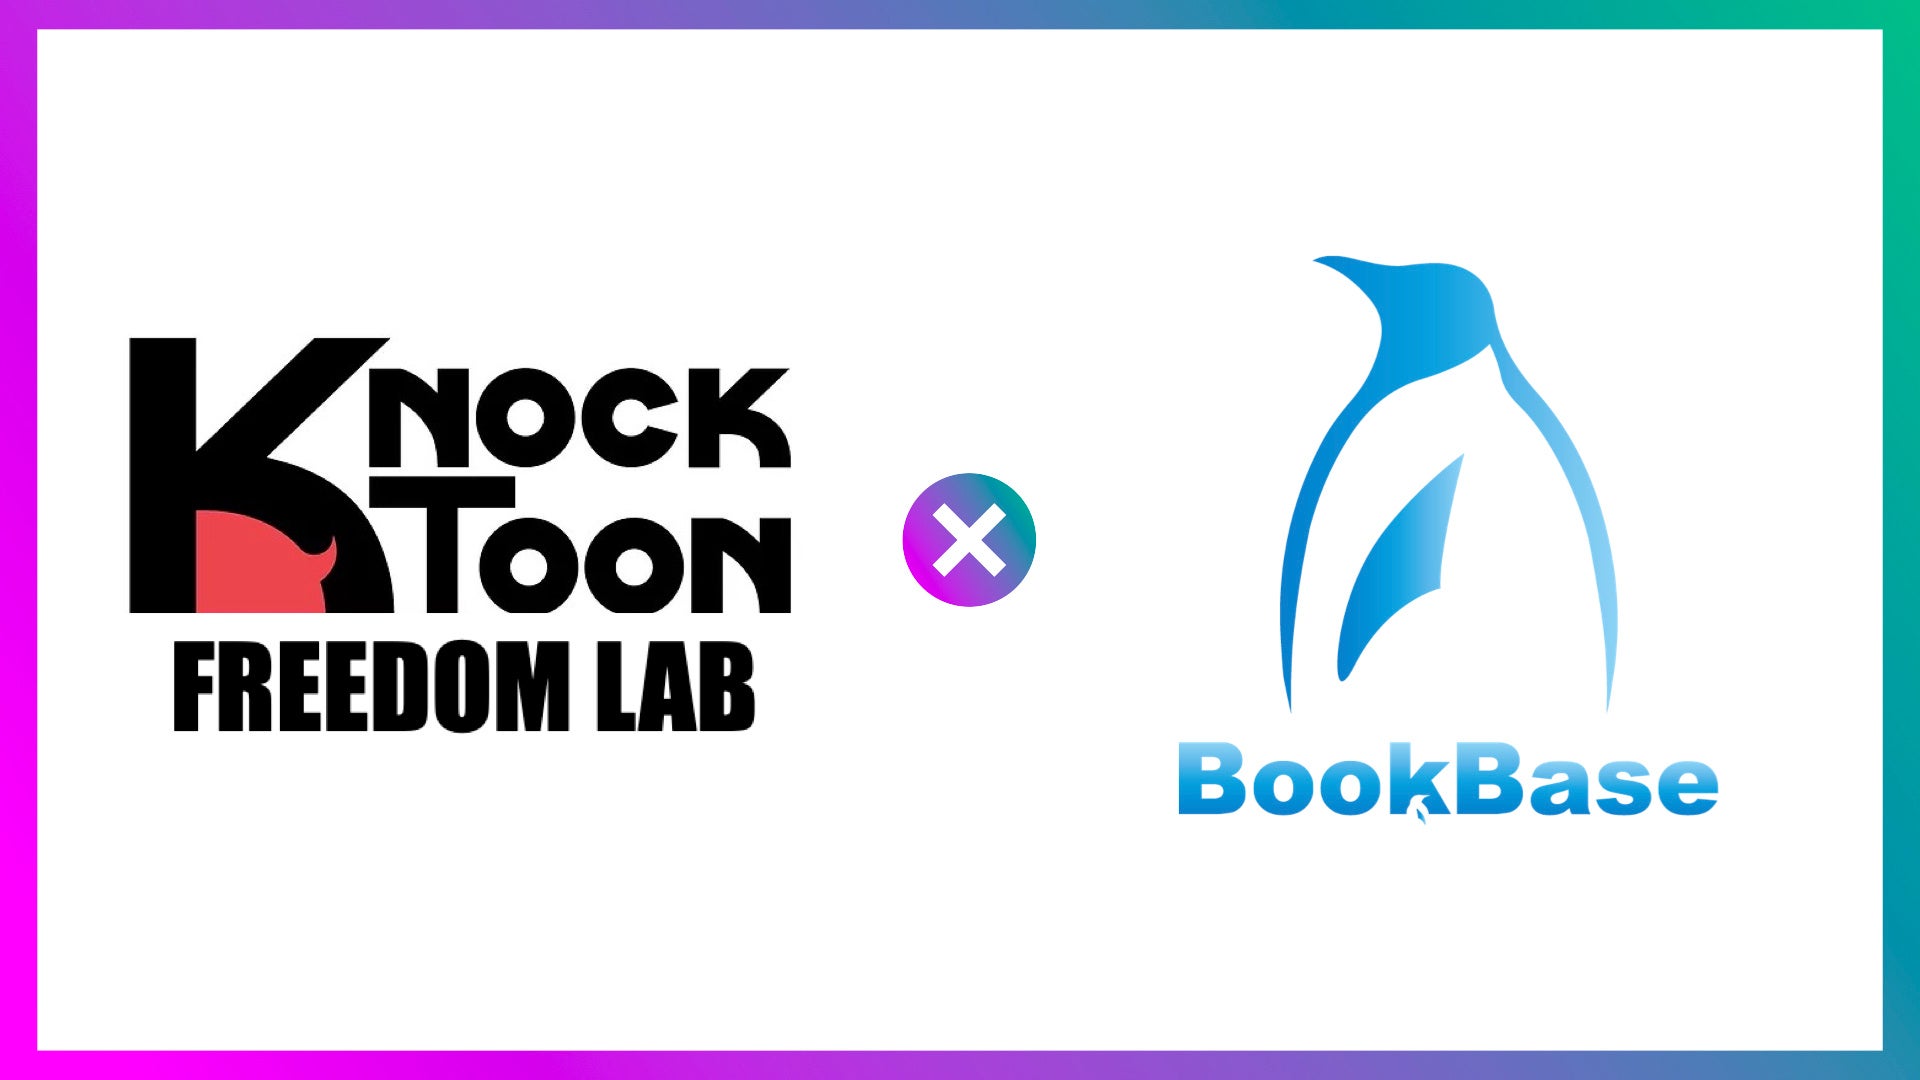 小説プラットフォームBookBase×Webtoon制作スタジオKnockToonによる日本製Webtoonのタッグ制作を開始！強力な原作をベースに、最高のWebtoonを生み出します！